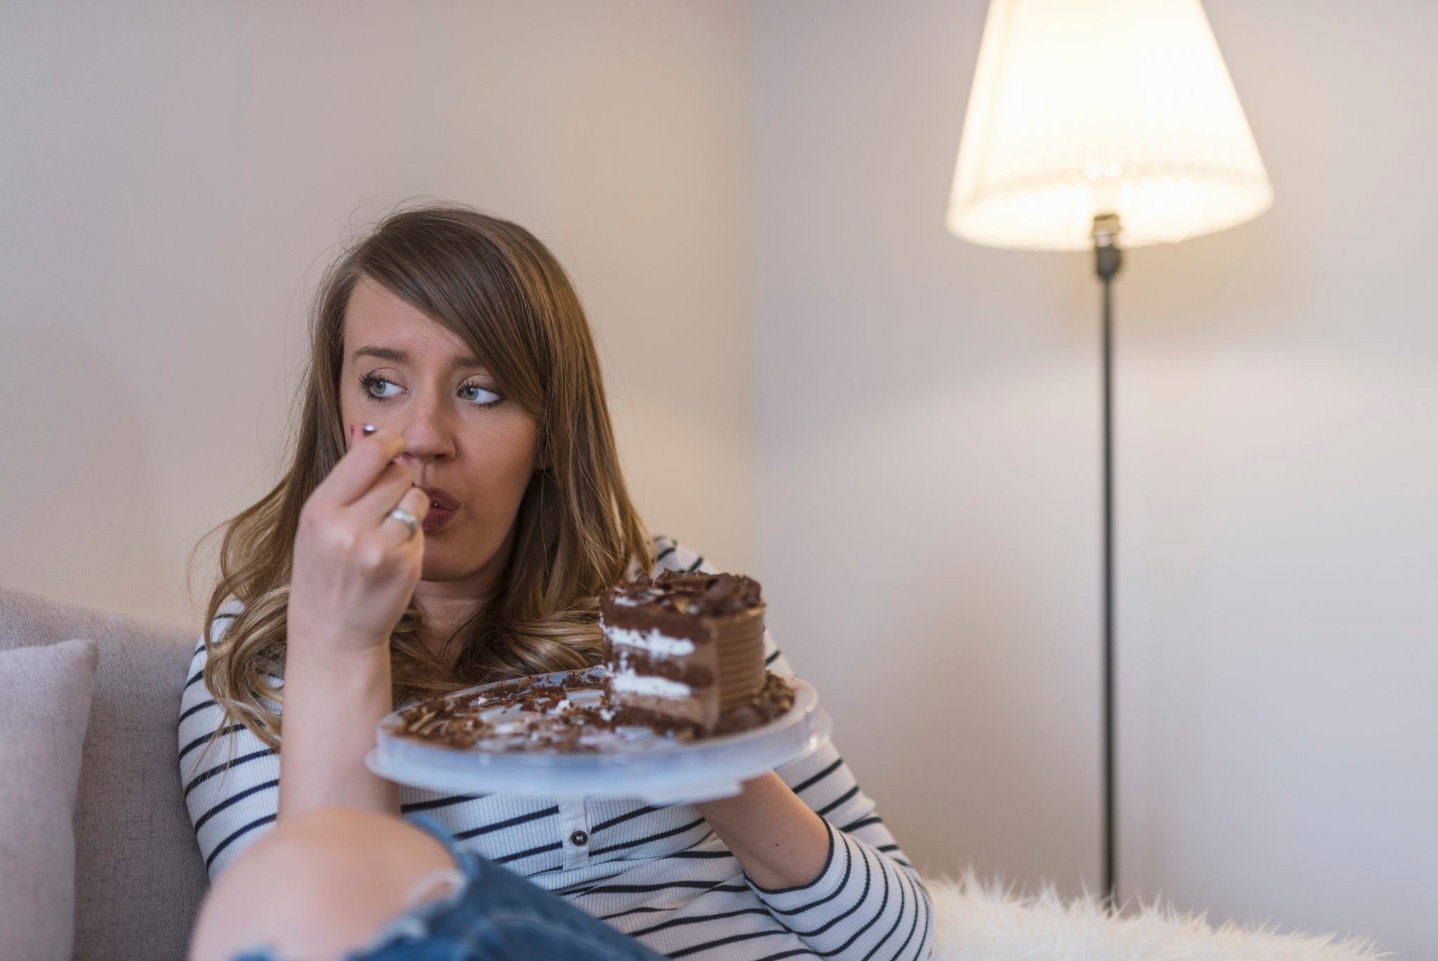 Sad woman eating sweet cake||||